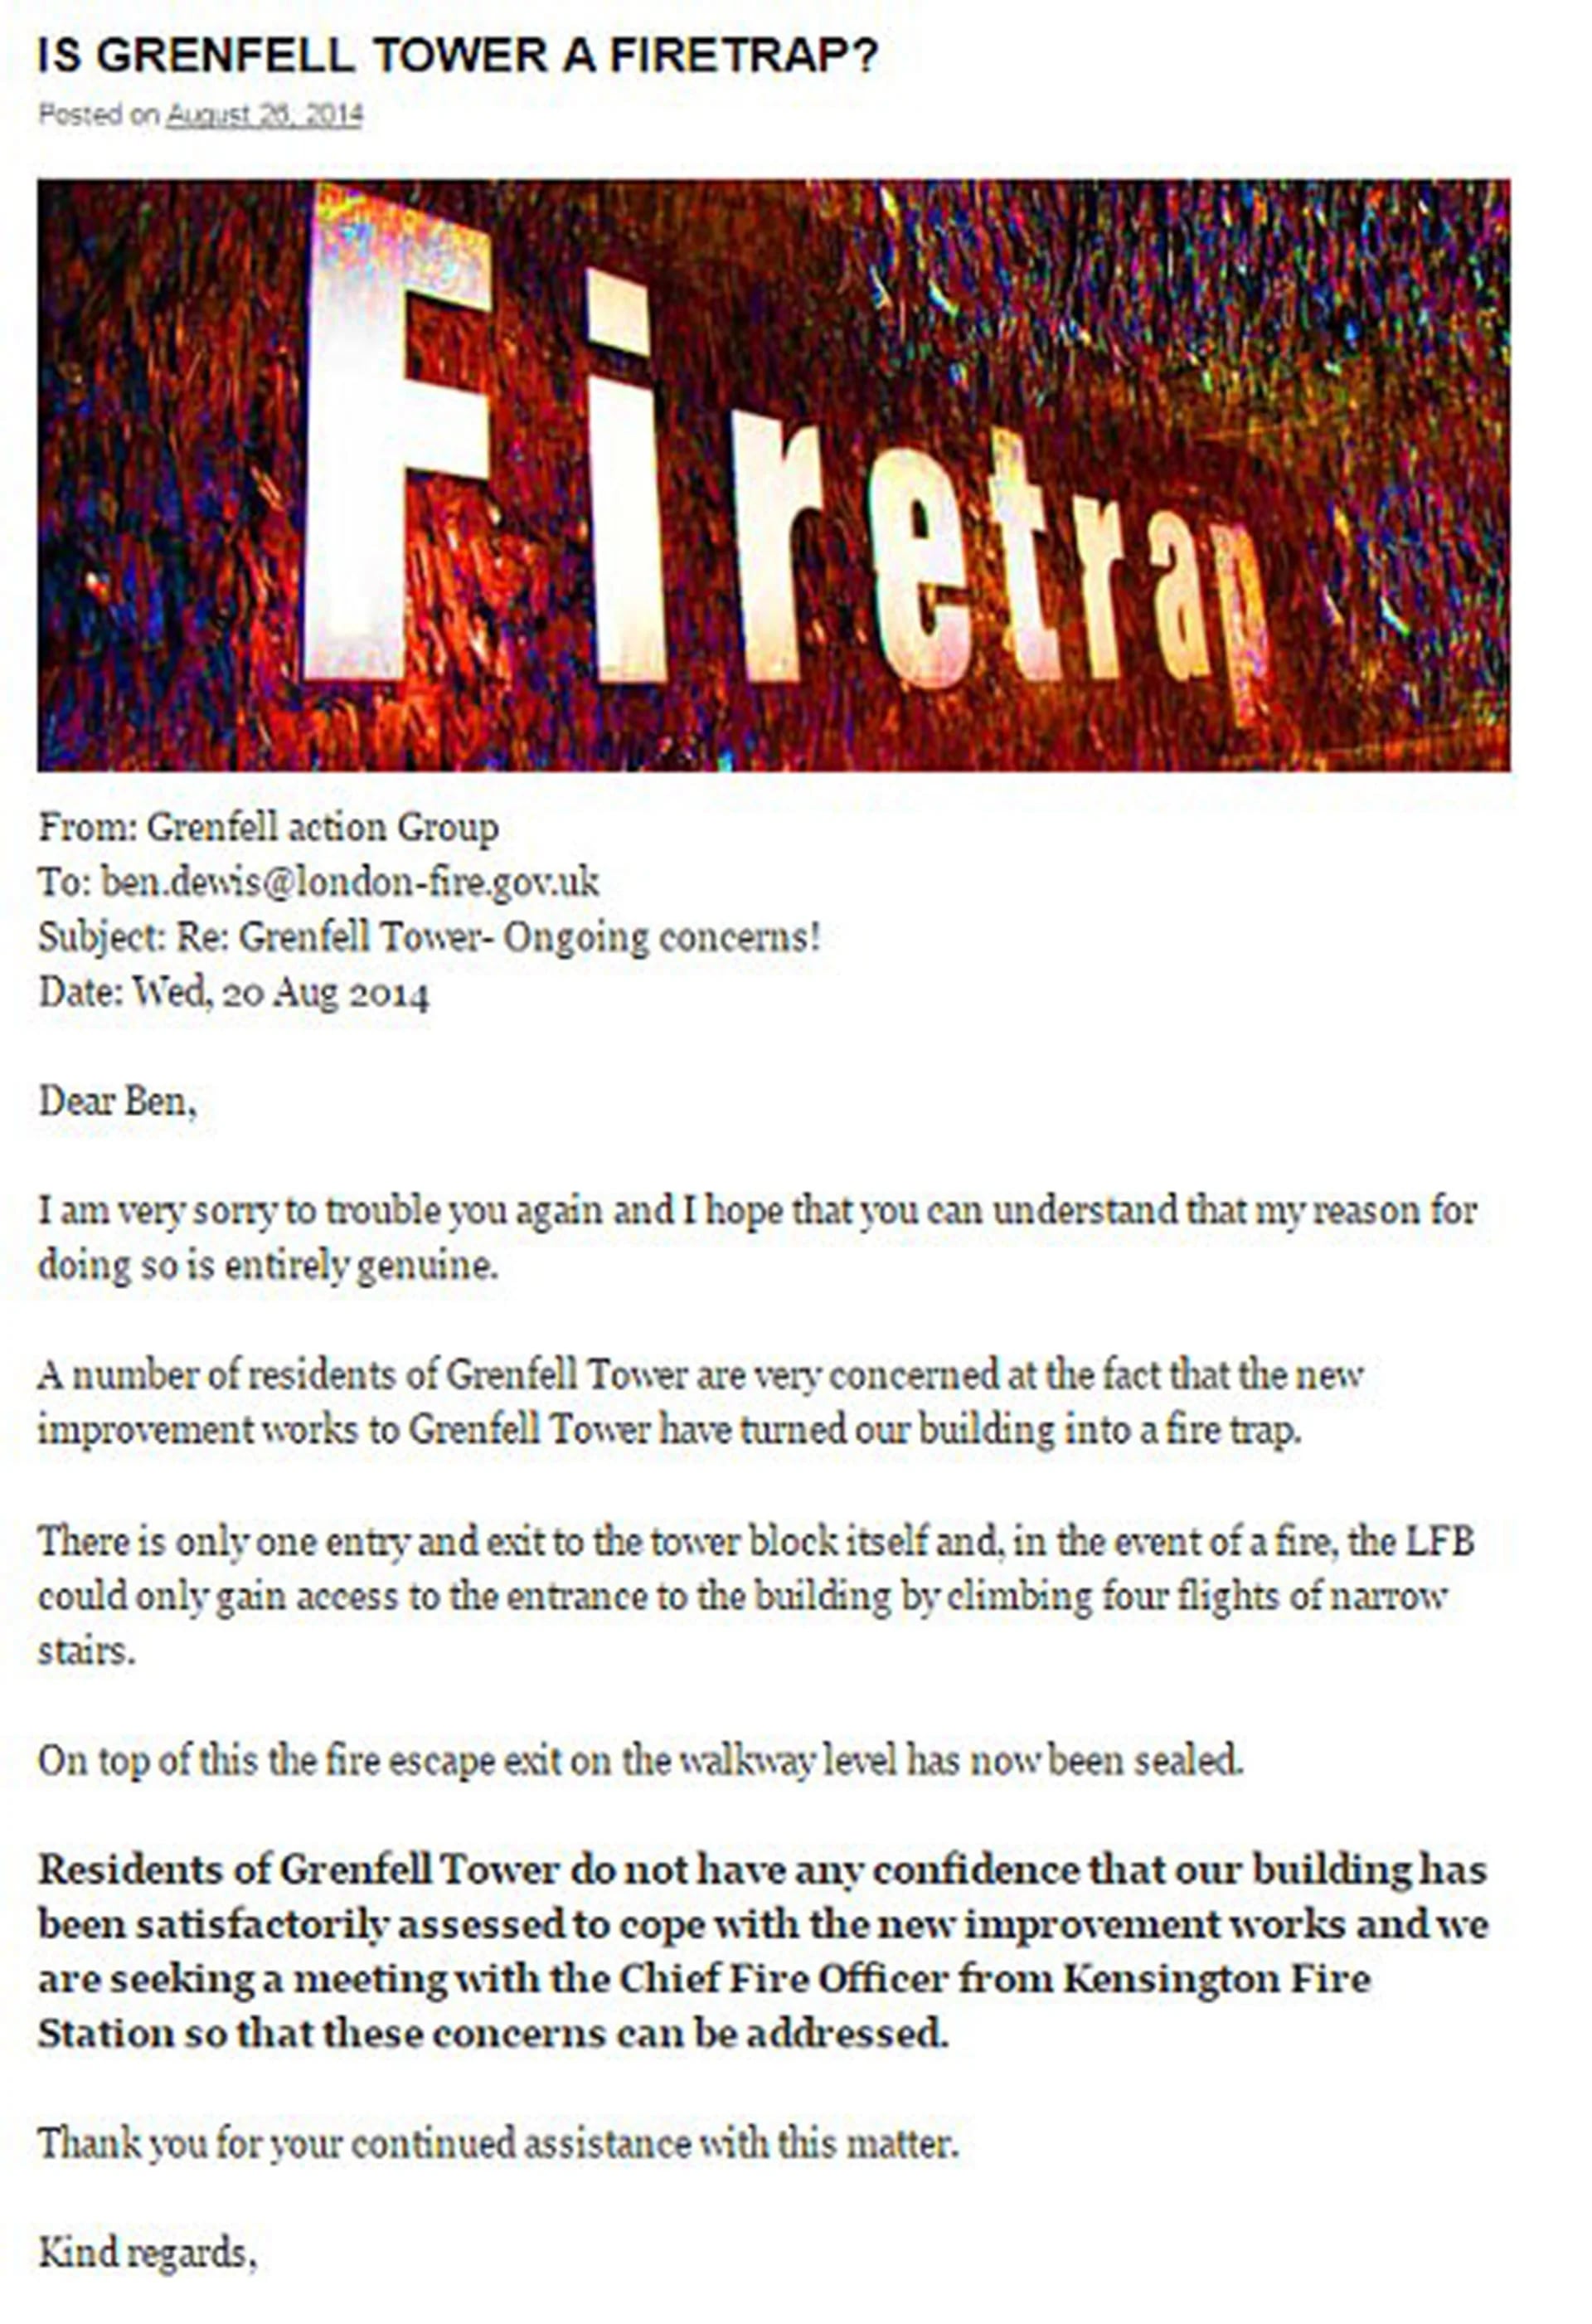 E-mail del Grupo de Accion de Grenfall, enviado en agsoto de 2014, a las autoridades responsables de la prevención de incendios